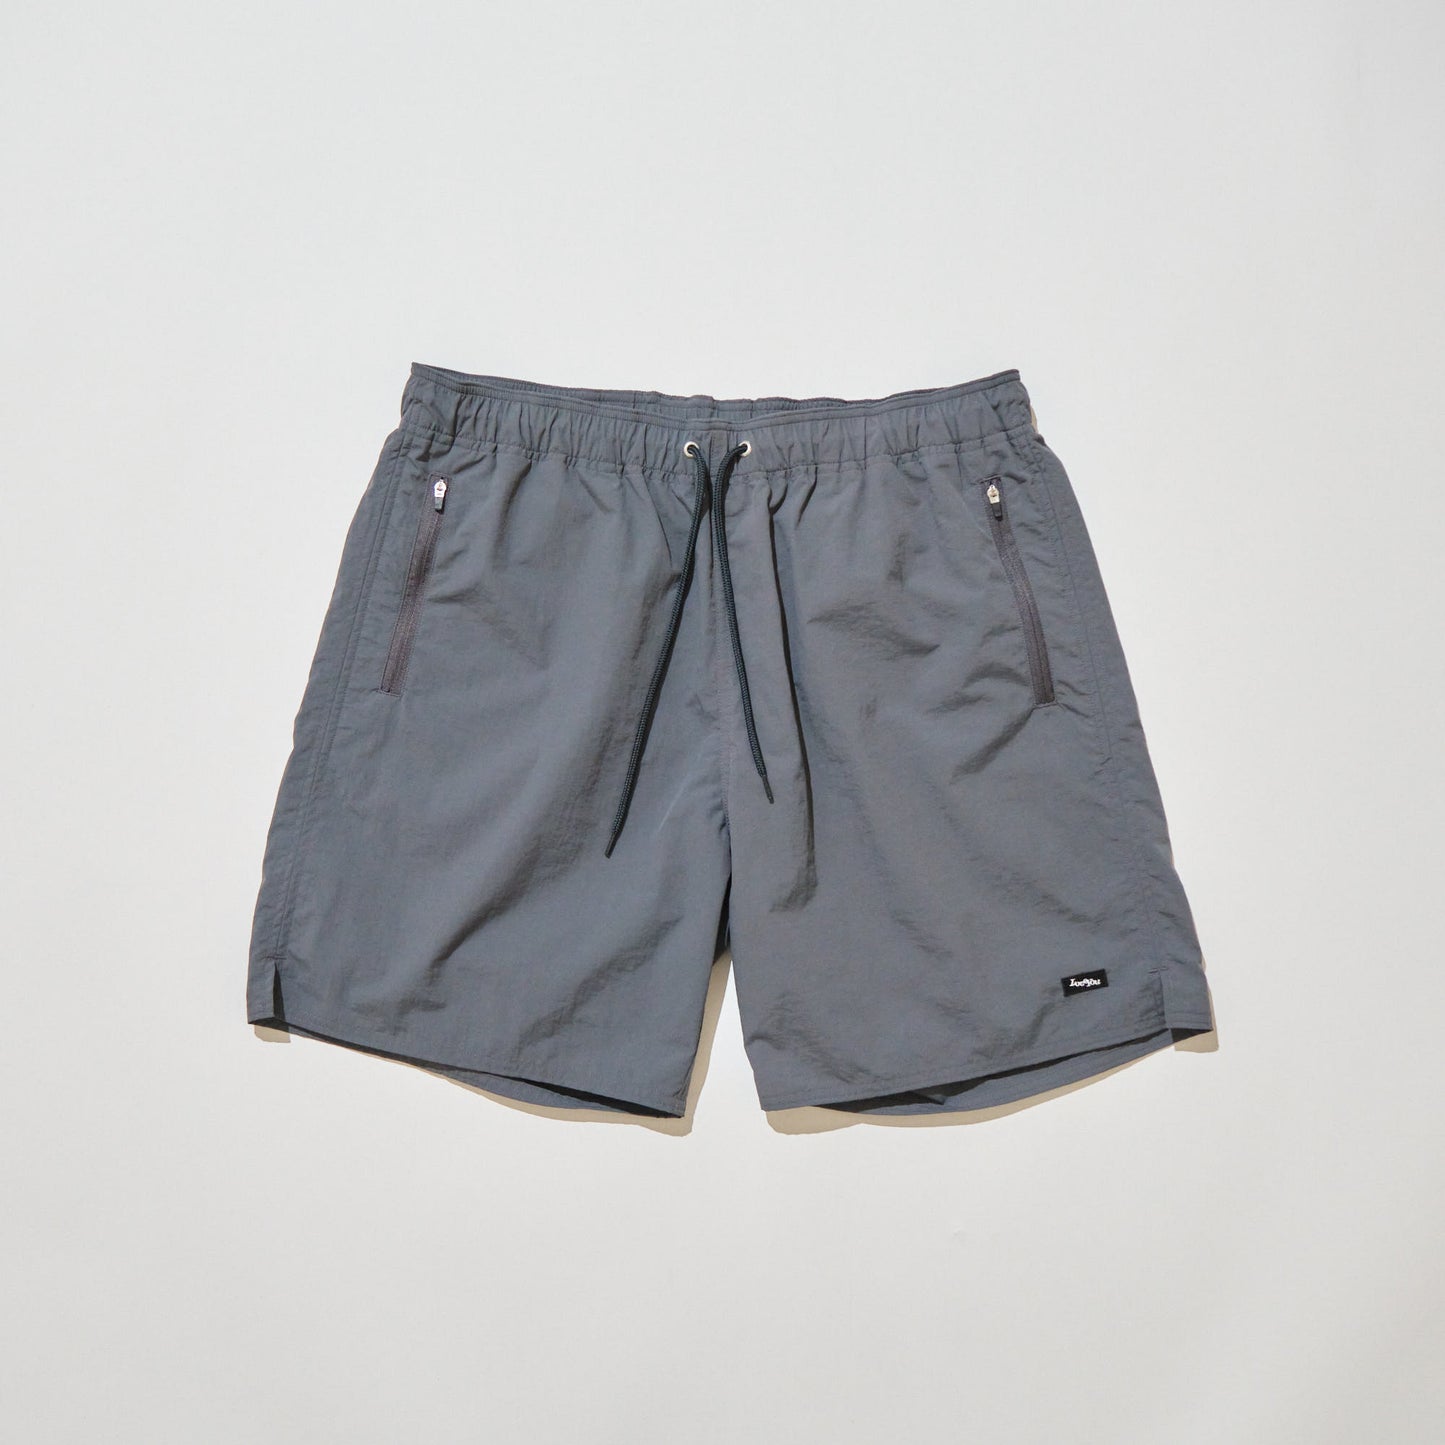 24/7 Nylon shorts No.2